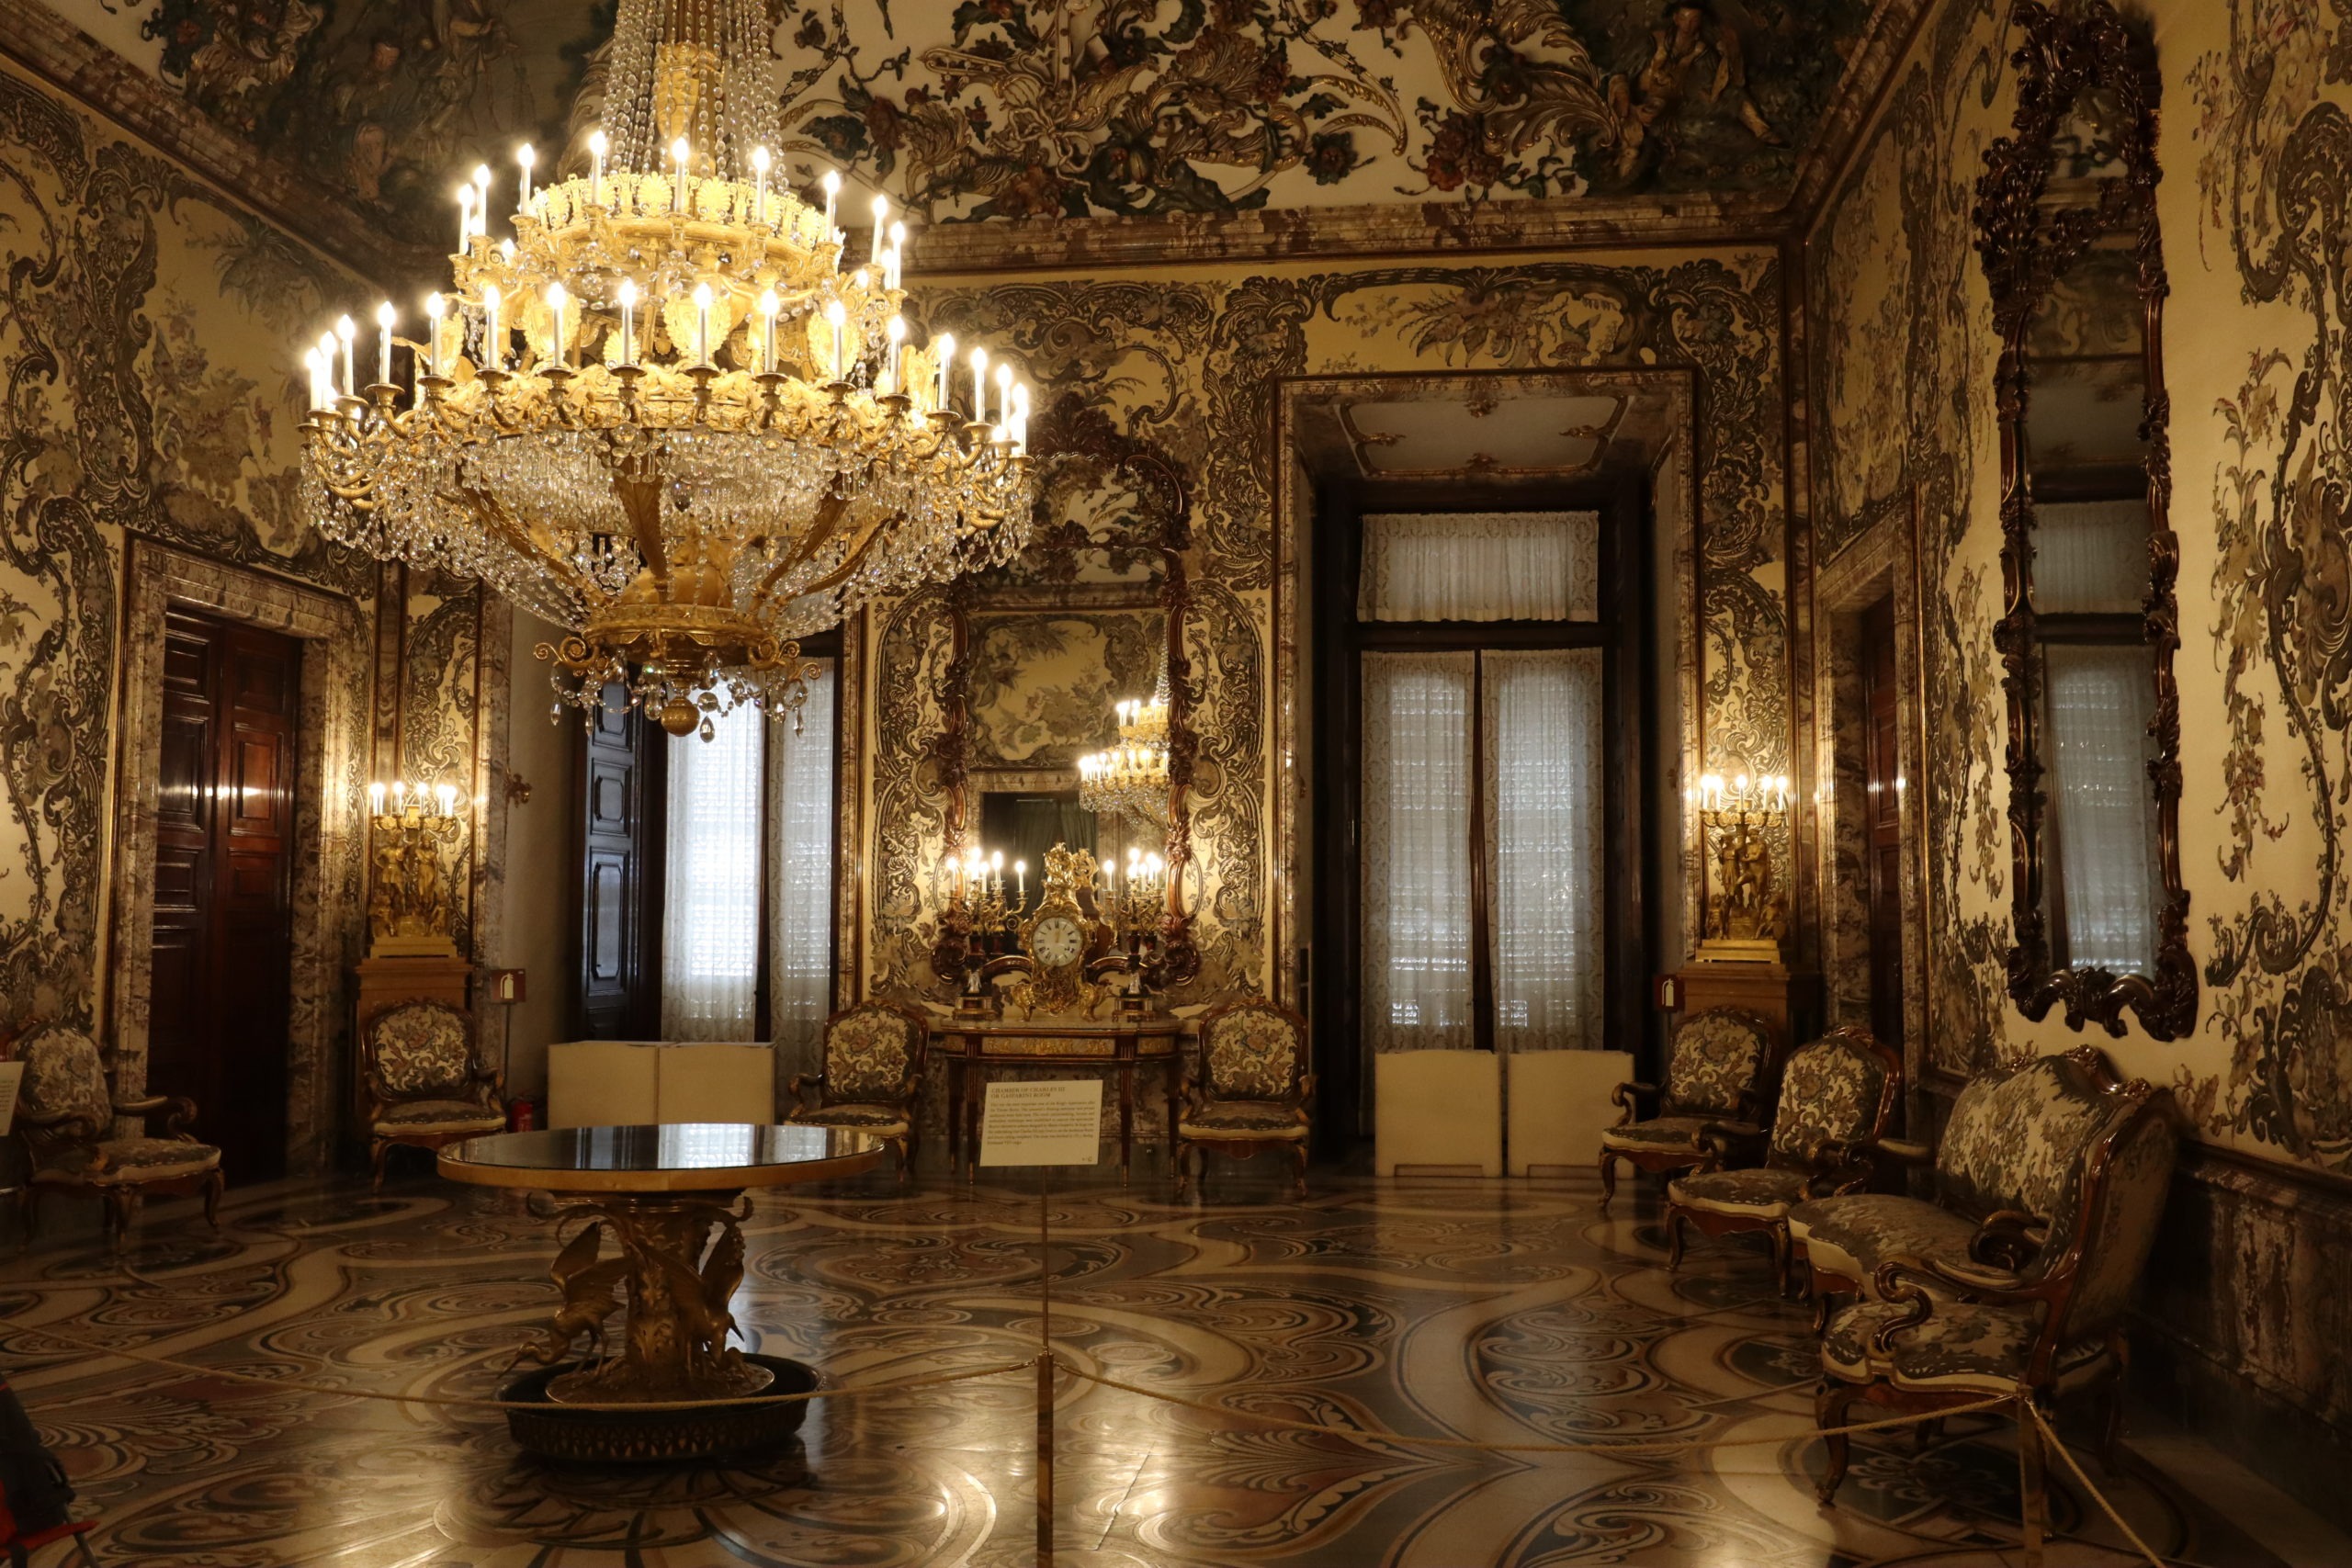 Đèn trang trí trong cung điện Palacio Real ở Tây Ban Nha